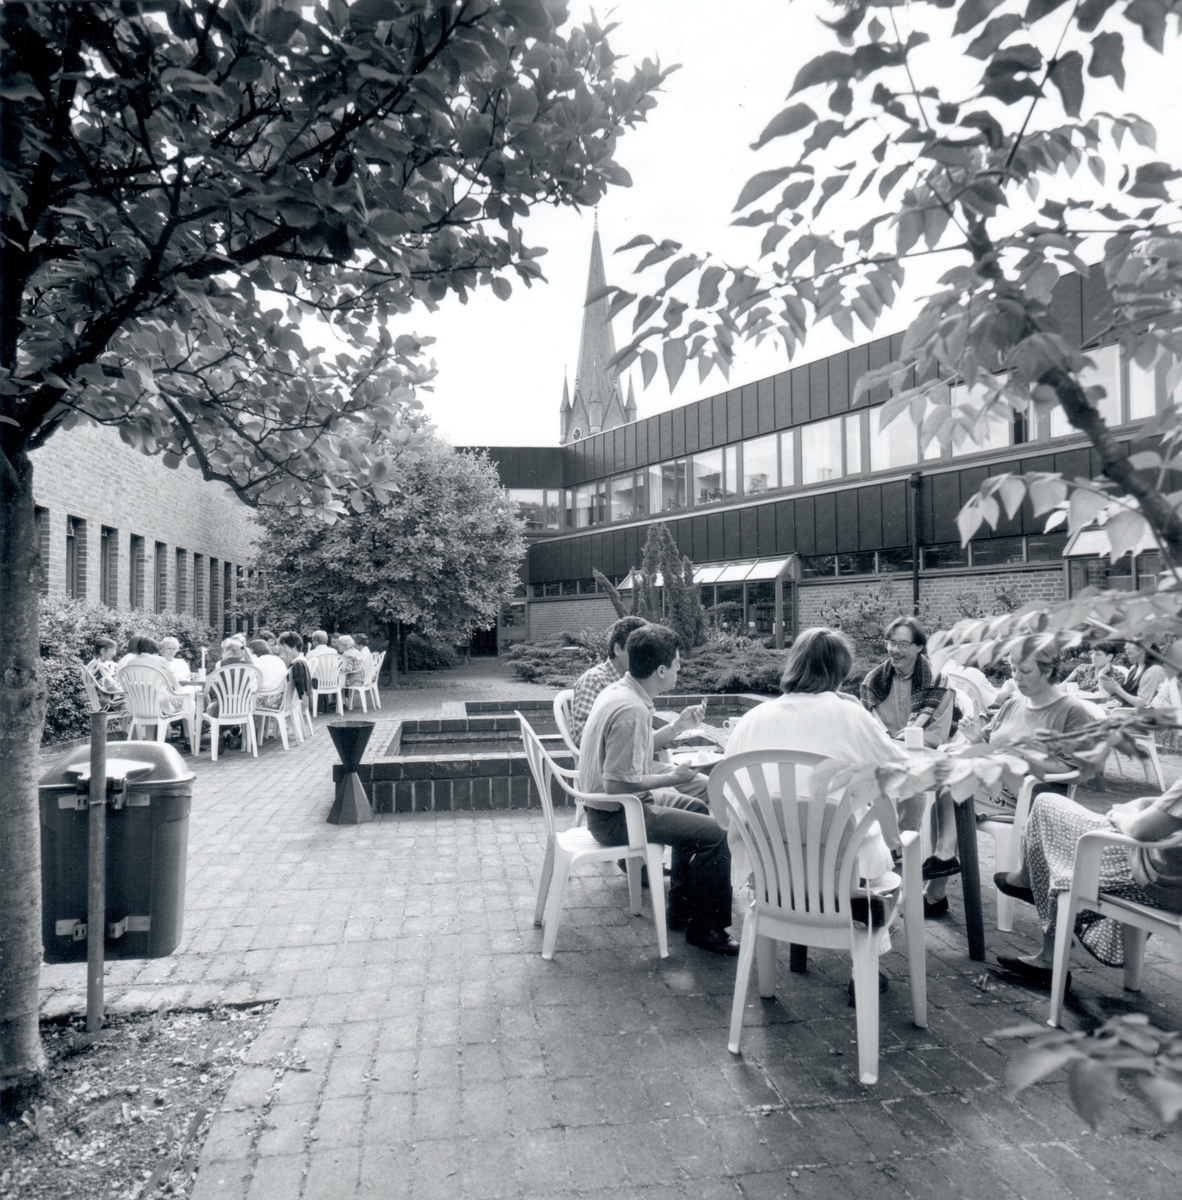 Innergården av Stifts- och landsbiblioteket, domkyrkotornet ses i bakgrunden.
Stadsbiblioteket: Efter en arkitekttävling 1966 ritades och inreddes biblioteket av arkitekterna Bo Cederlöf och Carl-Ewert Ekström. Byggnaden öppnades för allmänheten 1973-11-03, men invigningen skedde först 1974-06-06. Natten mellan 20-21 september 1996 utbröt en brand och huvuddelen av biblioteket förstördes.